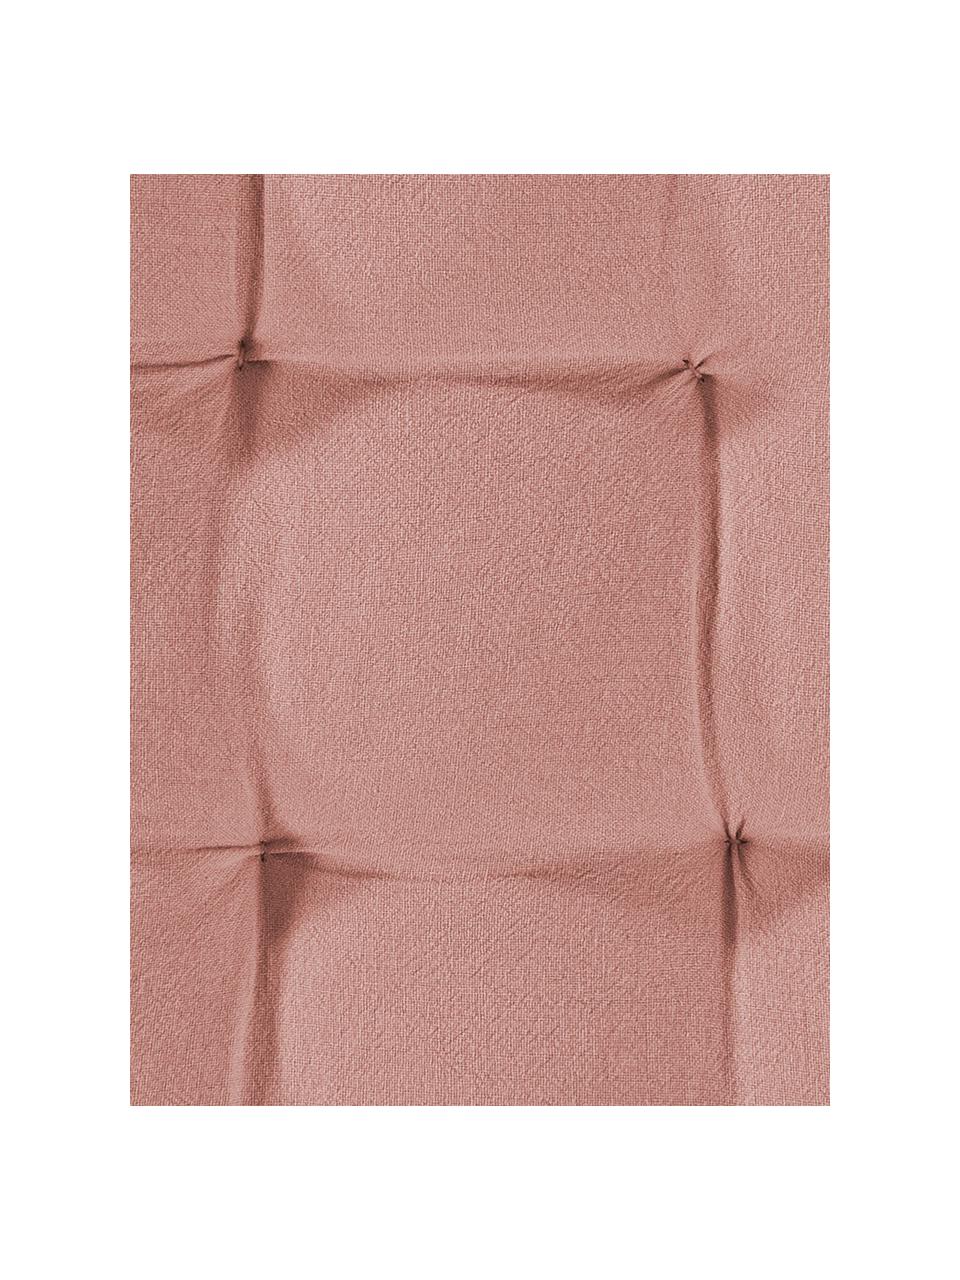 Poduszka na siedzisko Billie, Bawełna, Brudny różowy, S 40 x D 40 cm